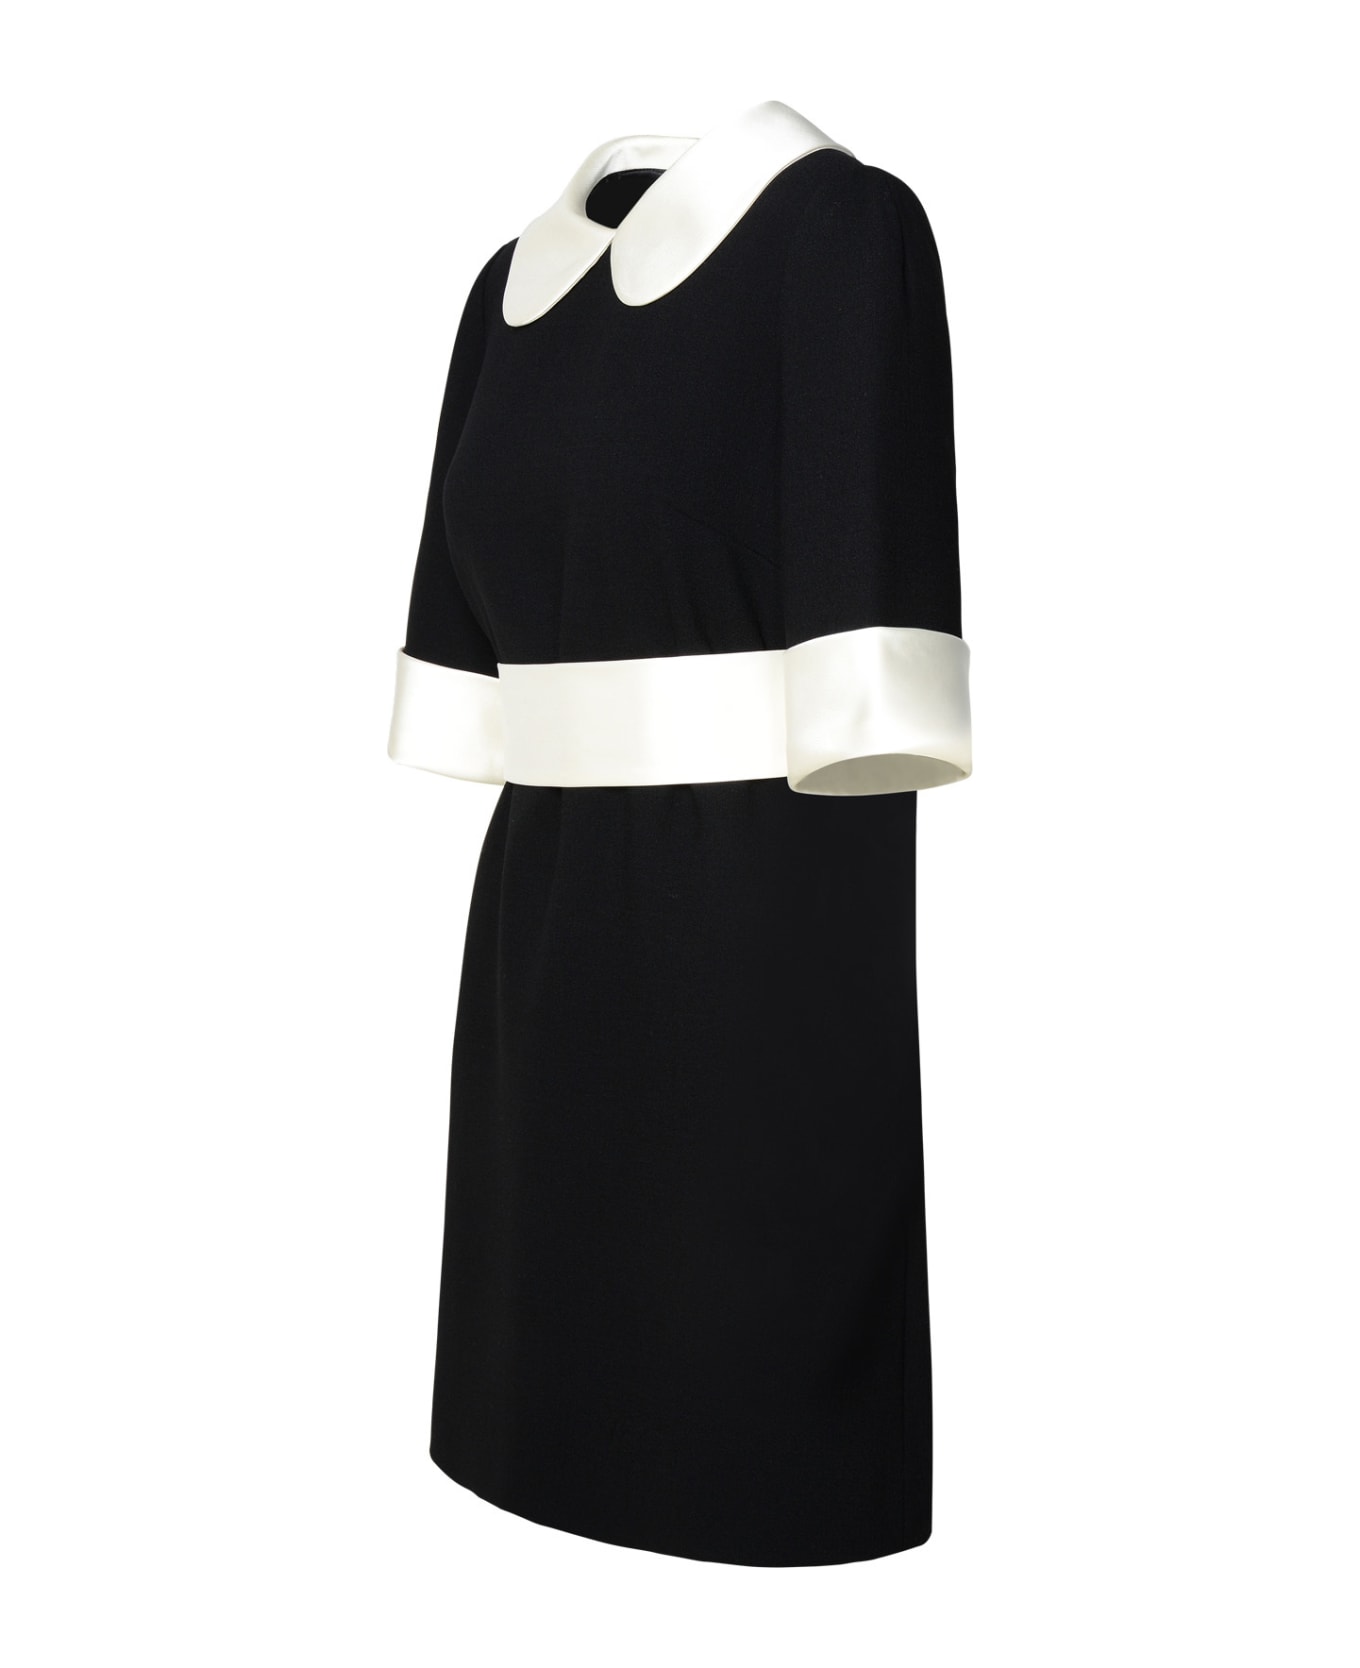 Dolce & Gabbana Black Virgin Wool Blend Dress - NERO (Black)